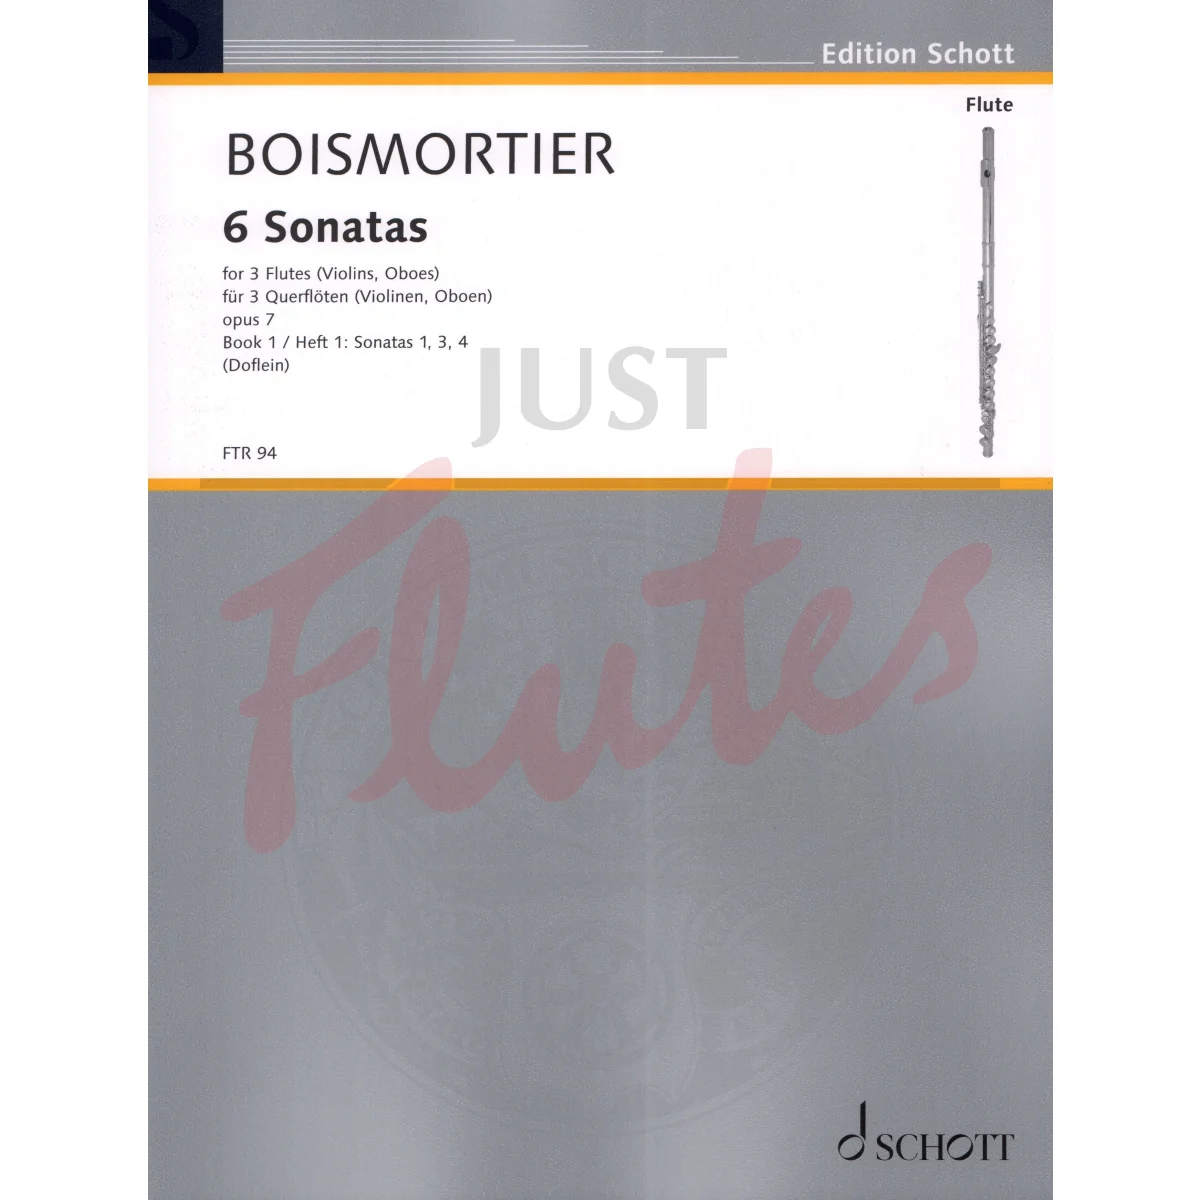 6 Sonatas for Three Flutes, Volume 1